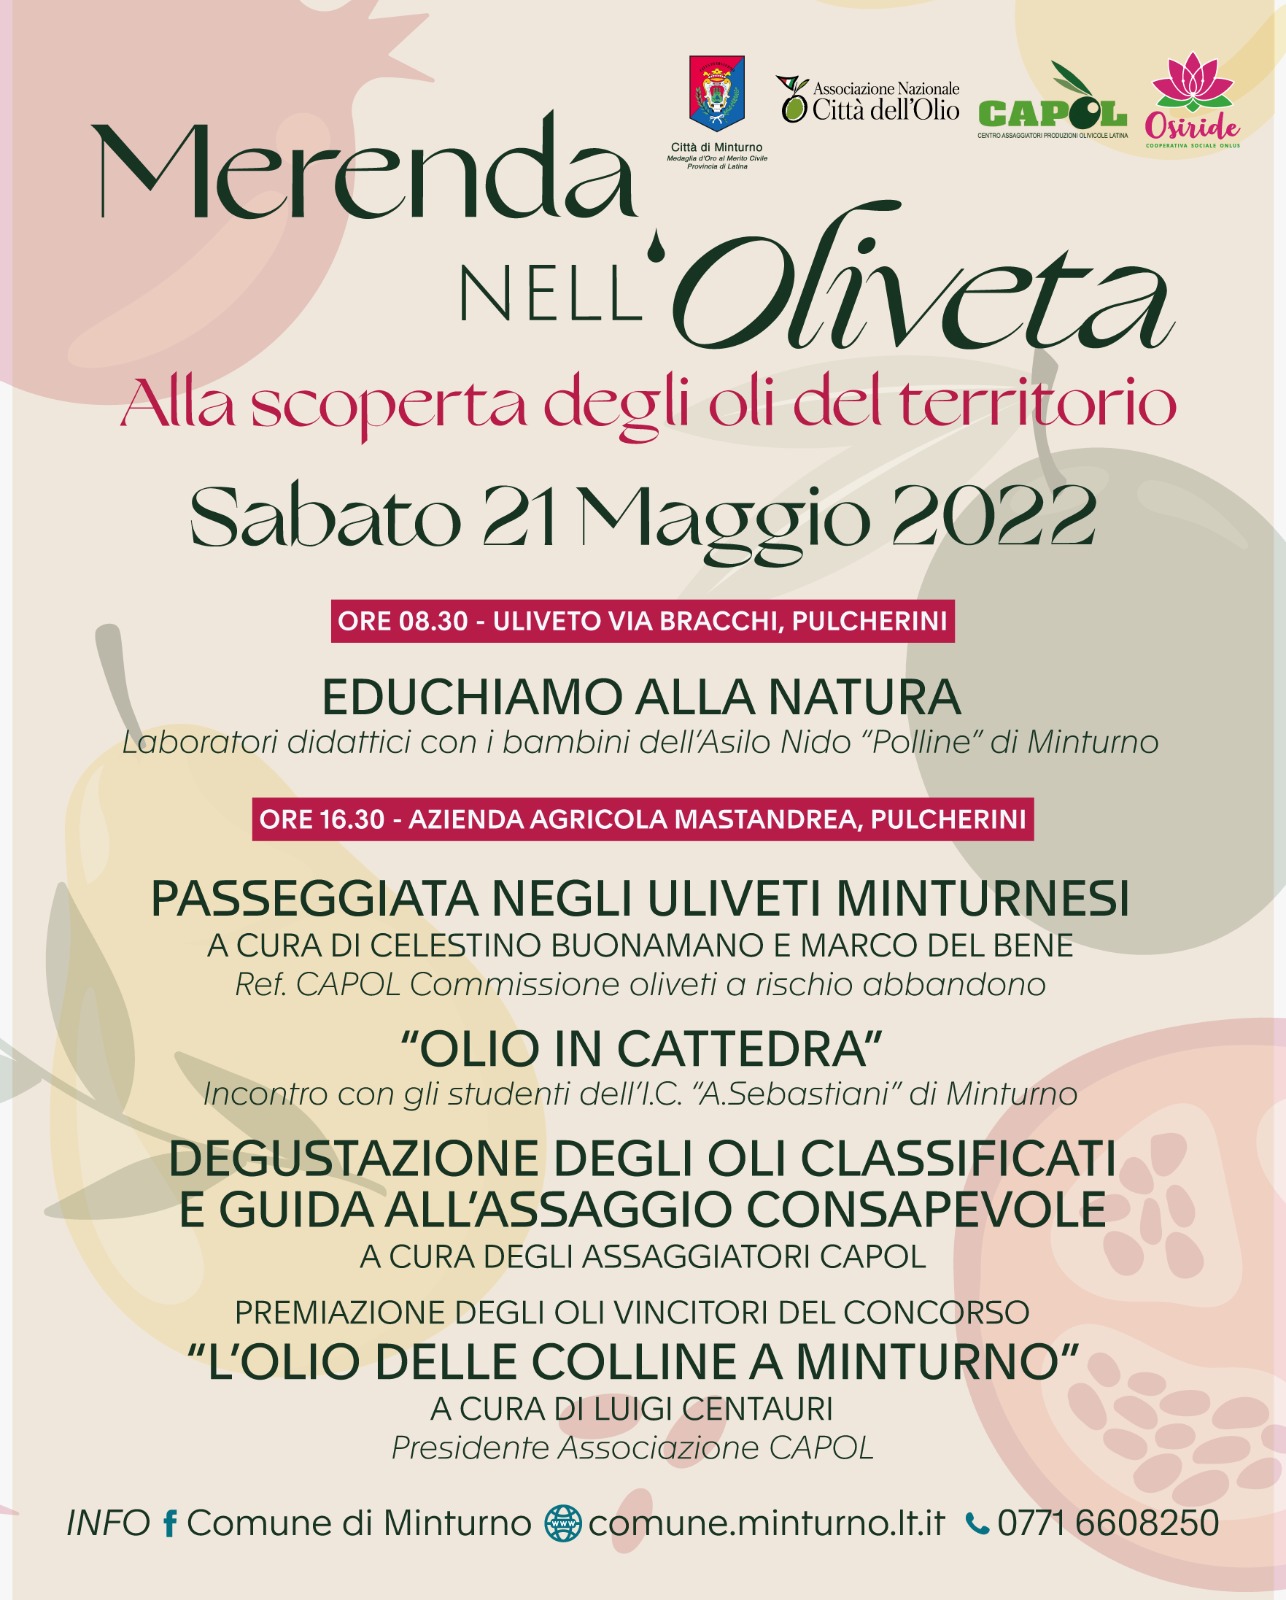 Sabato 21 maggio “Merenda nell’oliveta” a Pulcherini - COMUNICATO STAMPA
17.05.2022